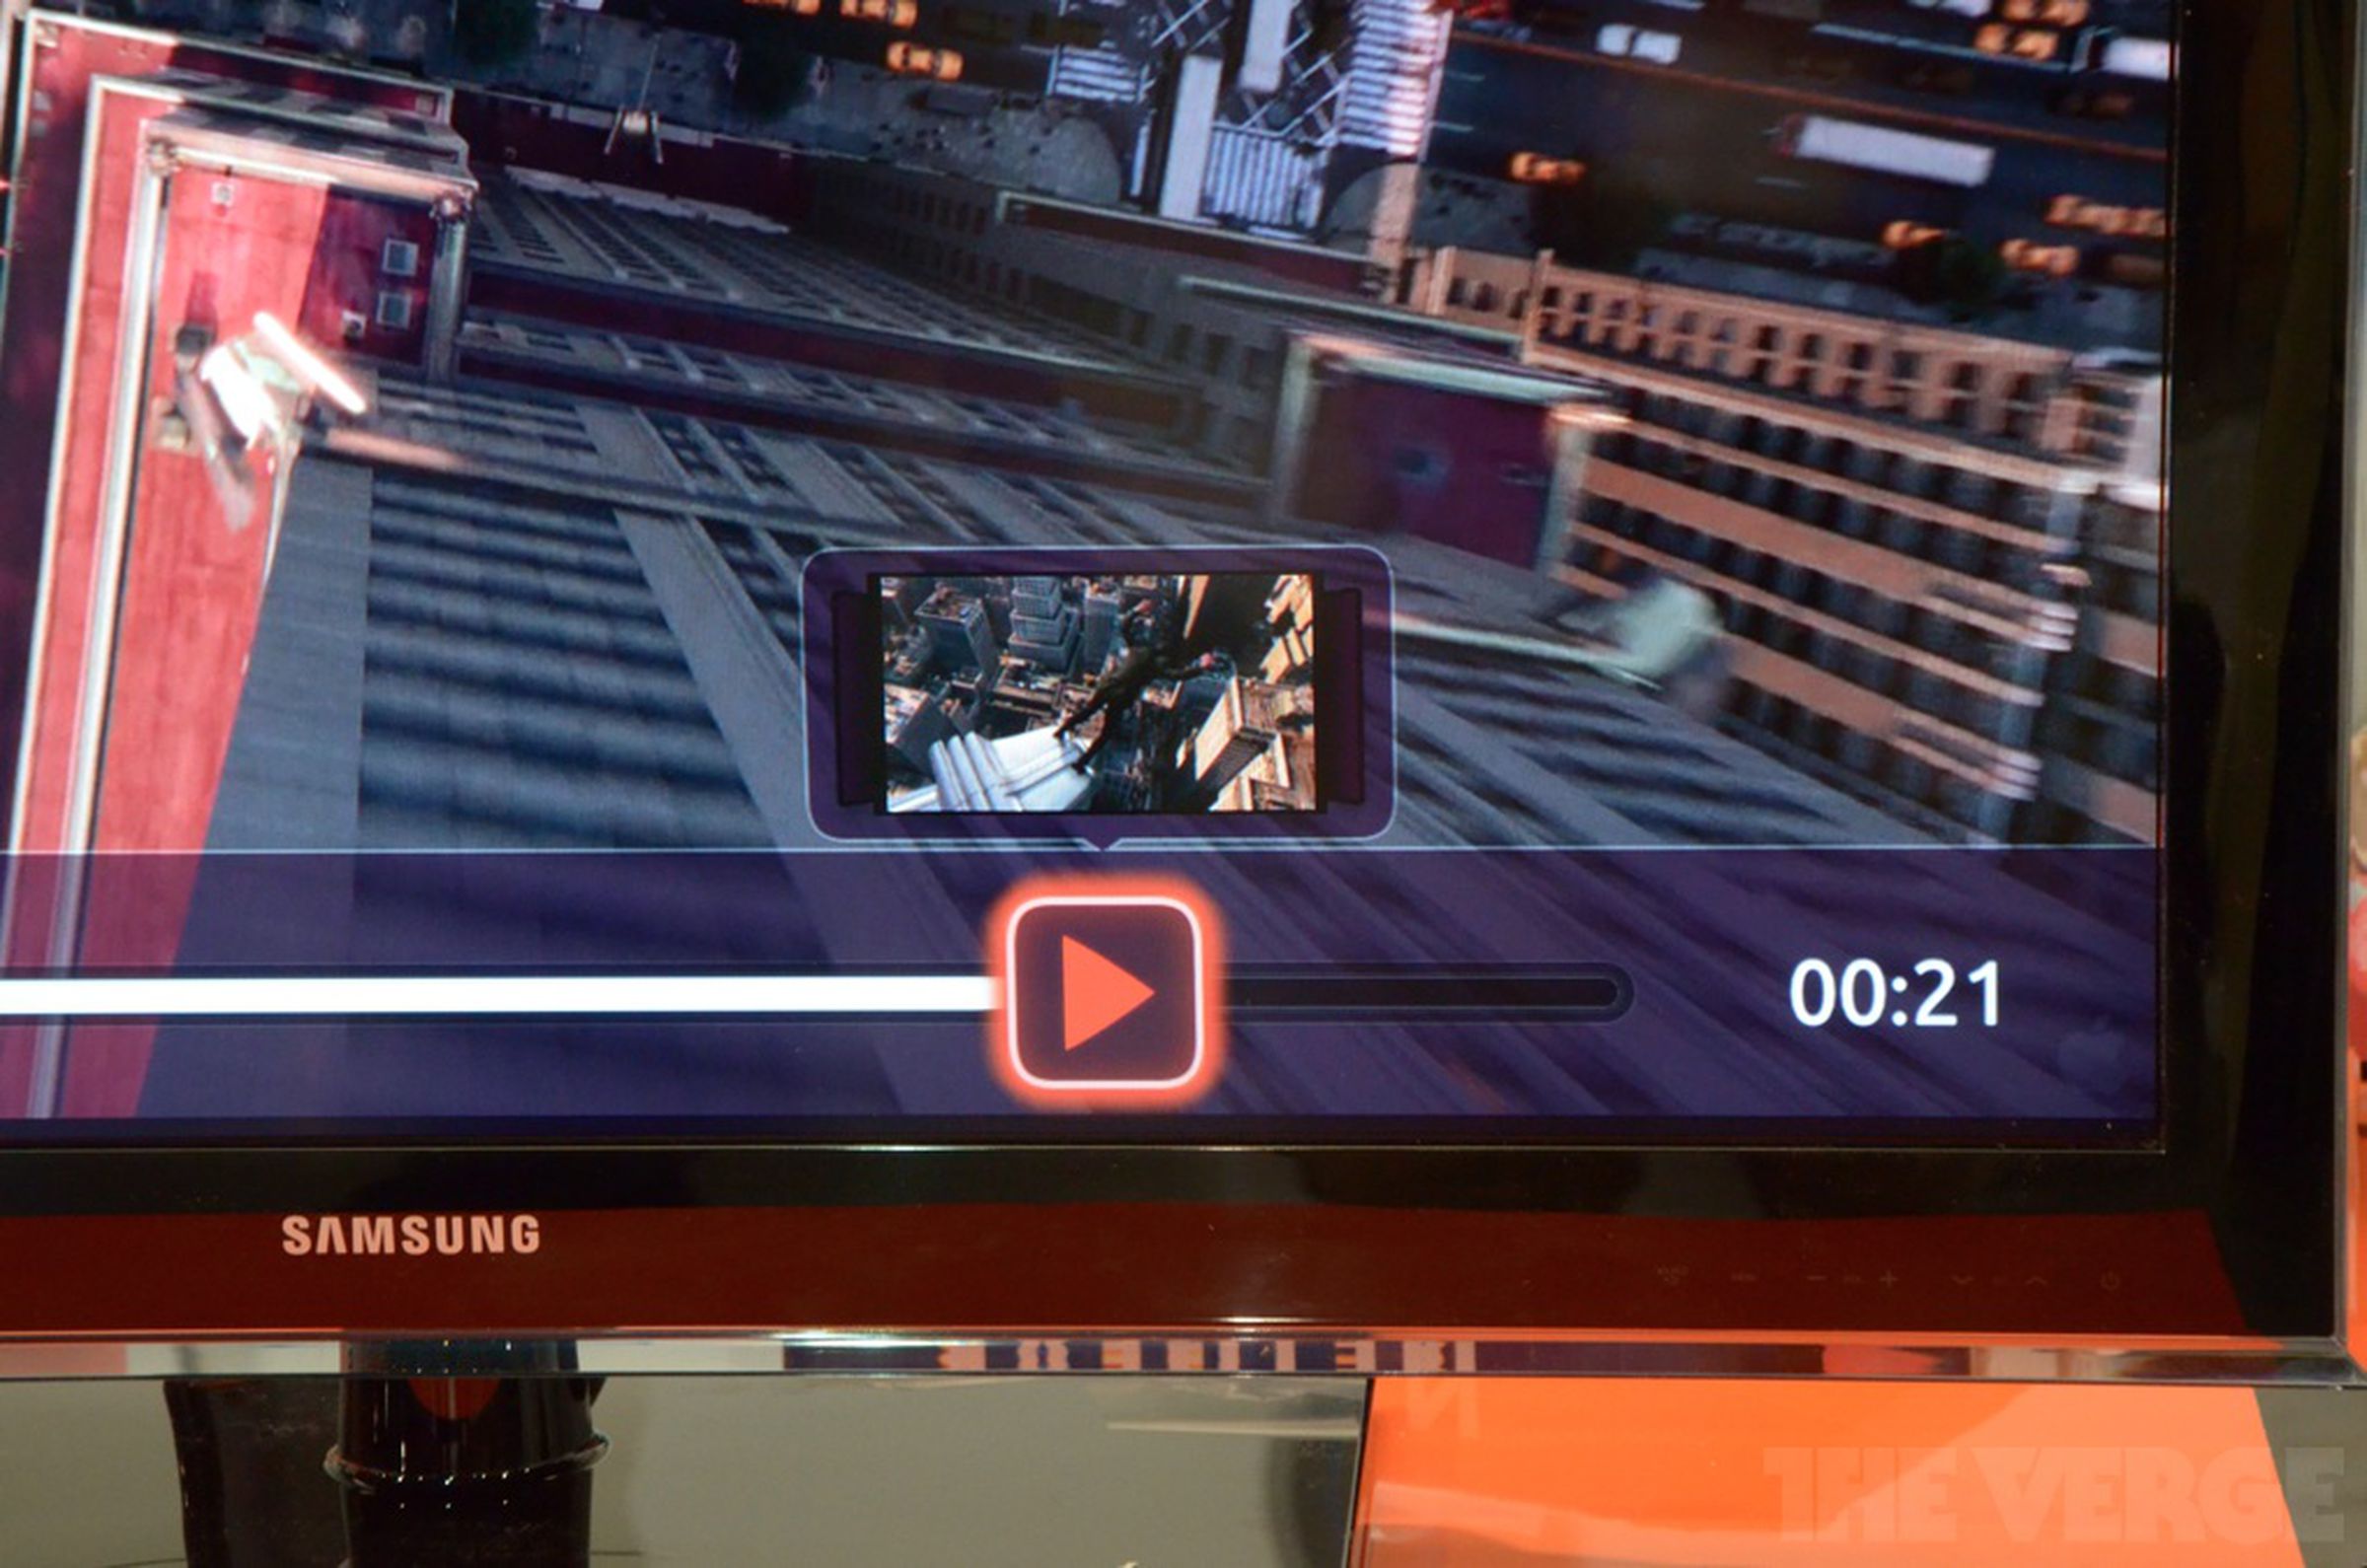 Ubuntu TV hands-on pictures